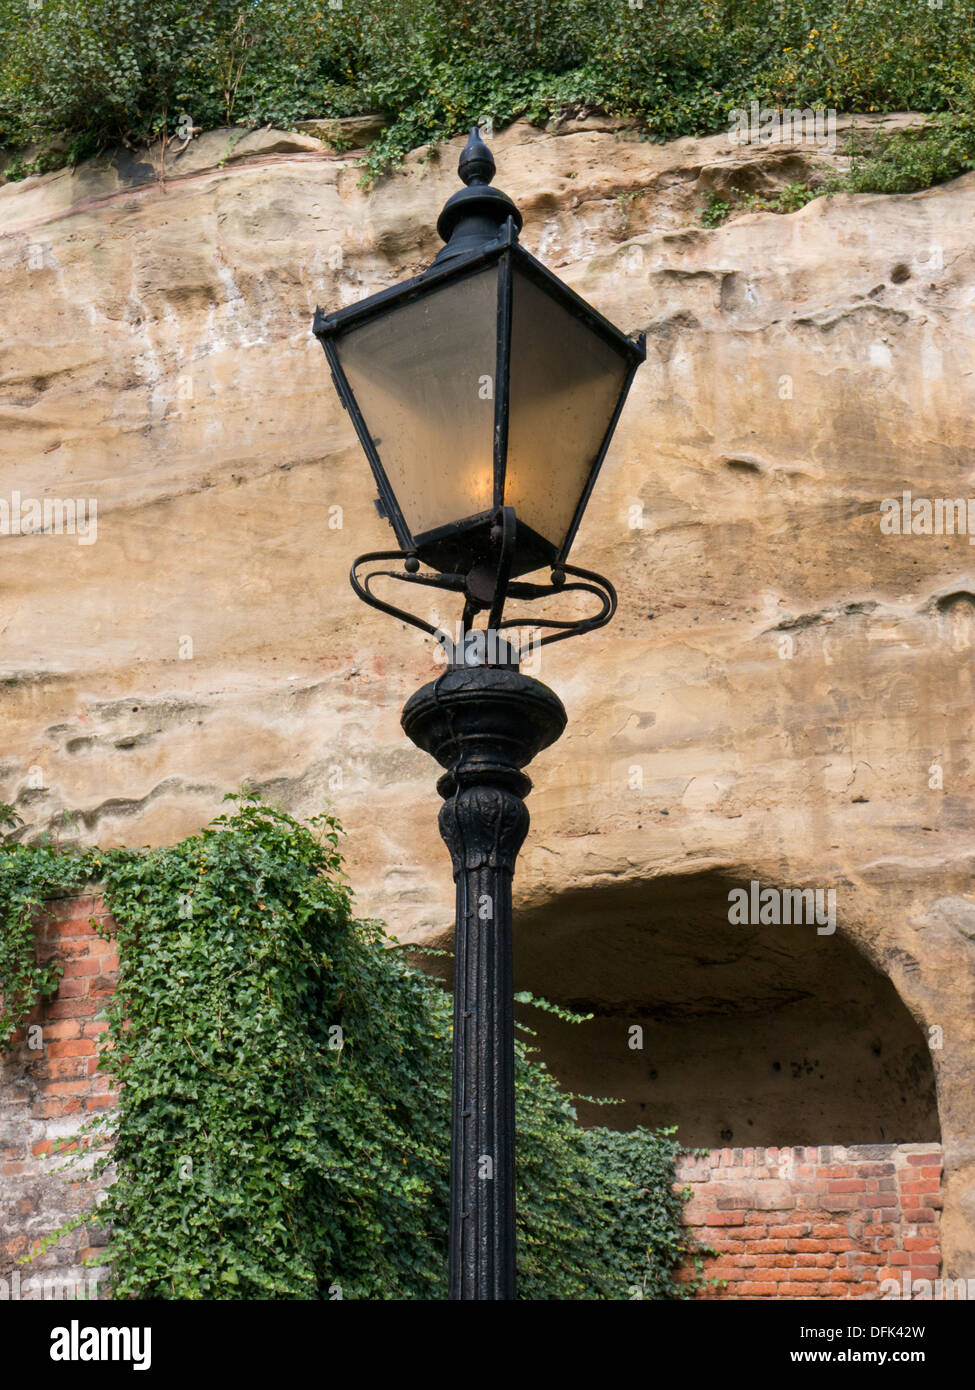 Traditional iron street light in Nottingham, United Kingdom, UK. Stock Photo